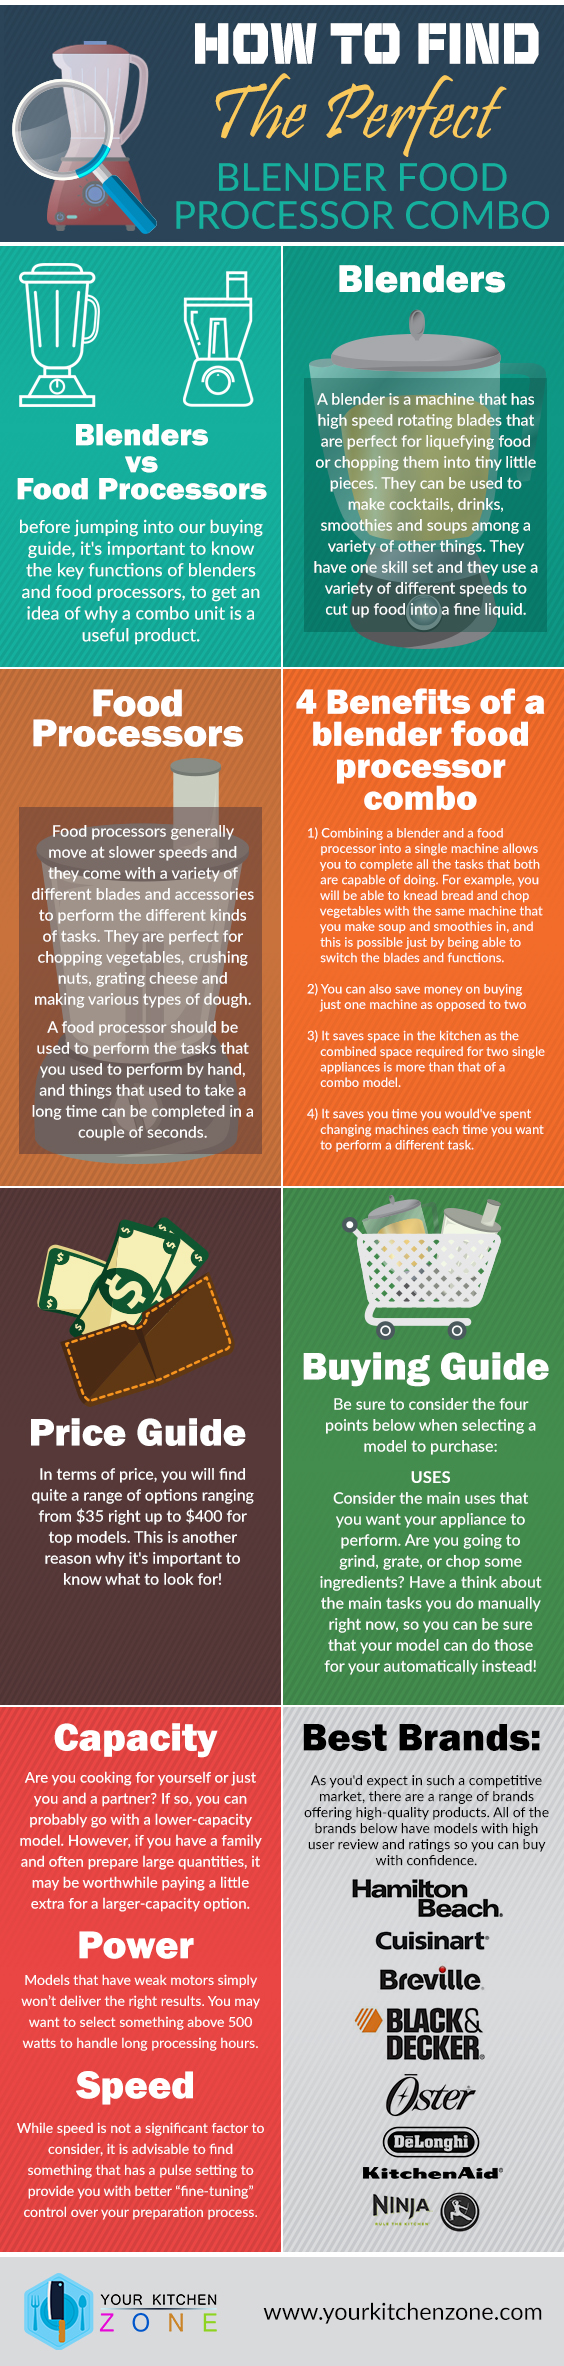 Perforatie Afkorten Gedrag Blender Food Processor Buying Guide [Infographic]